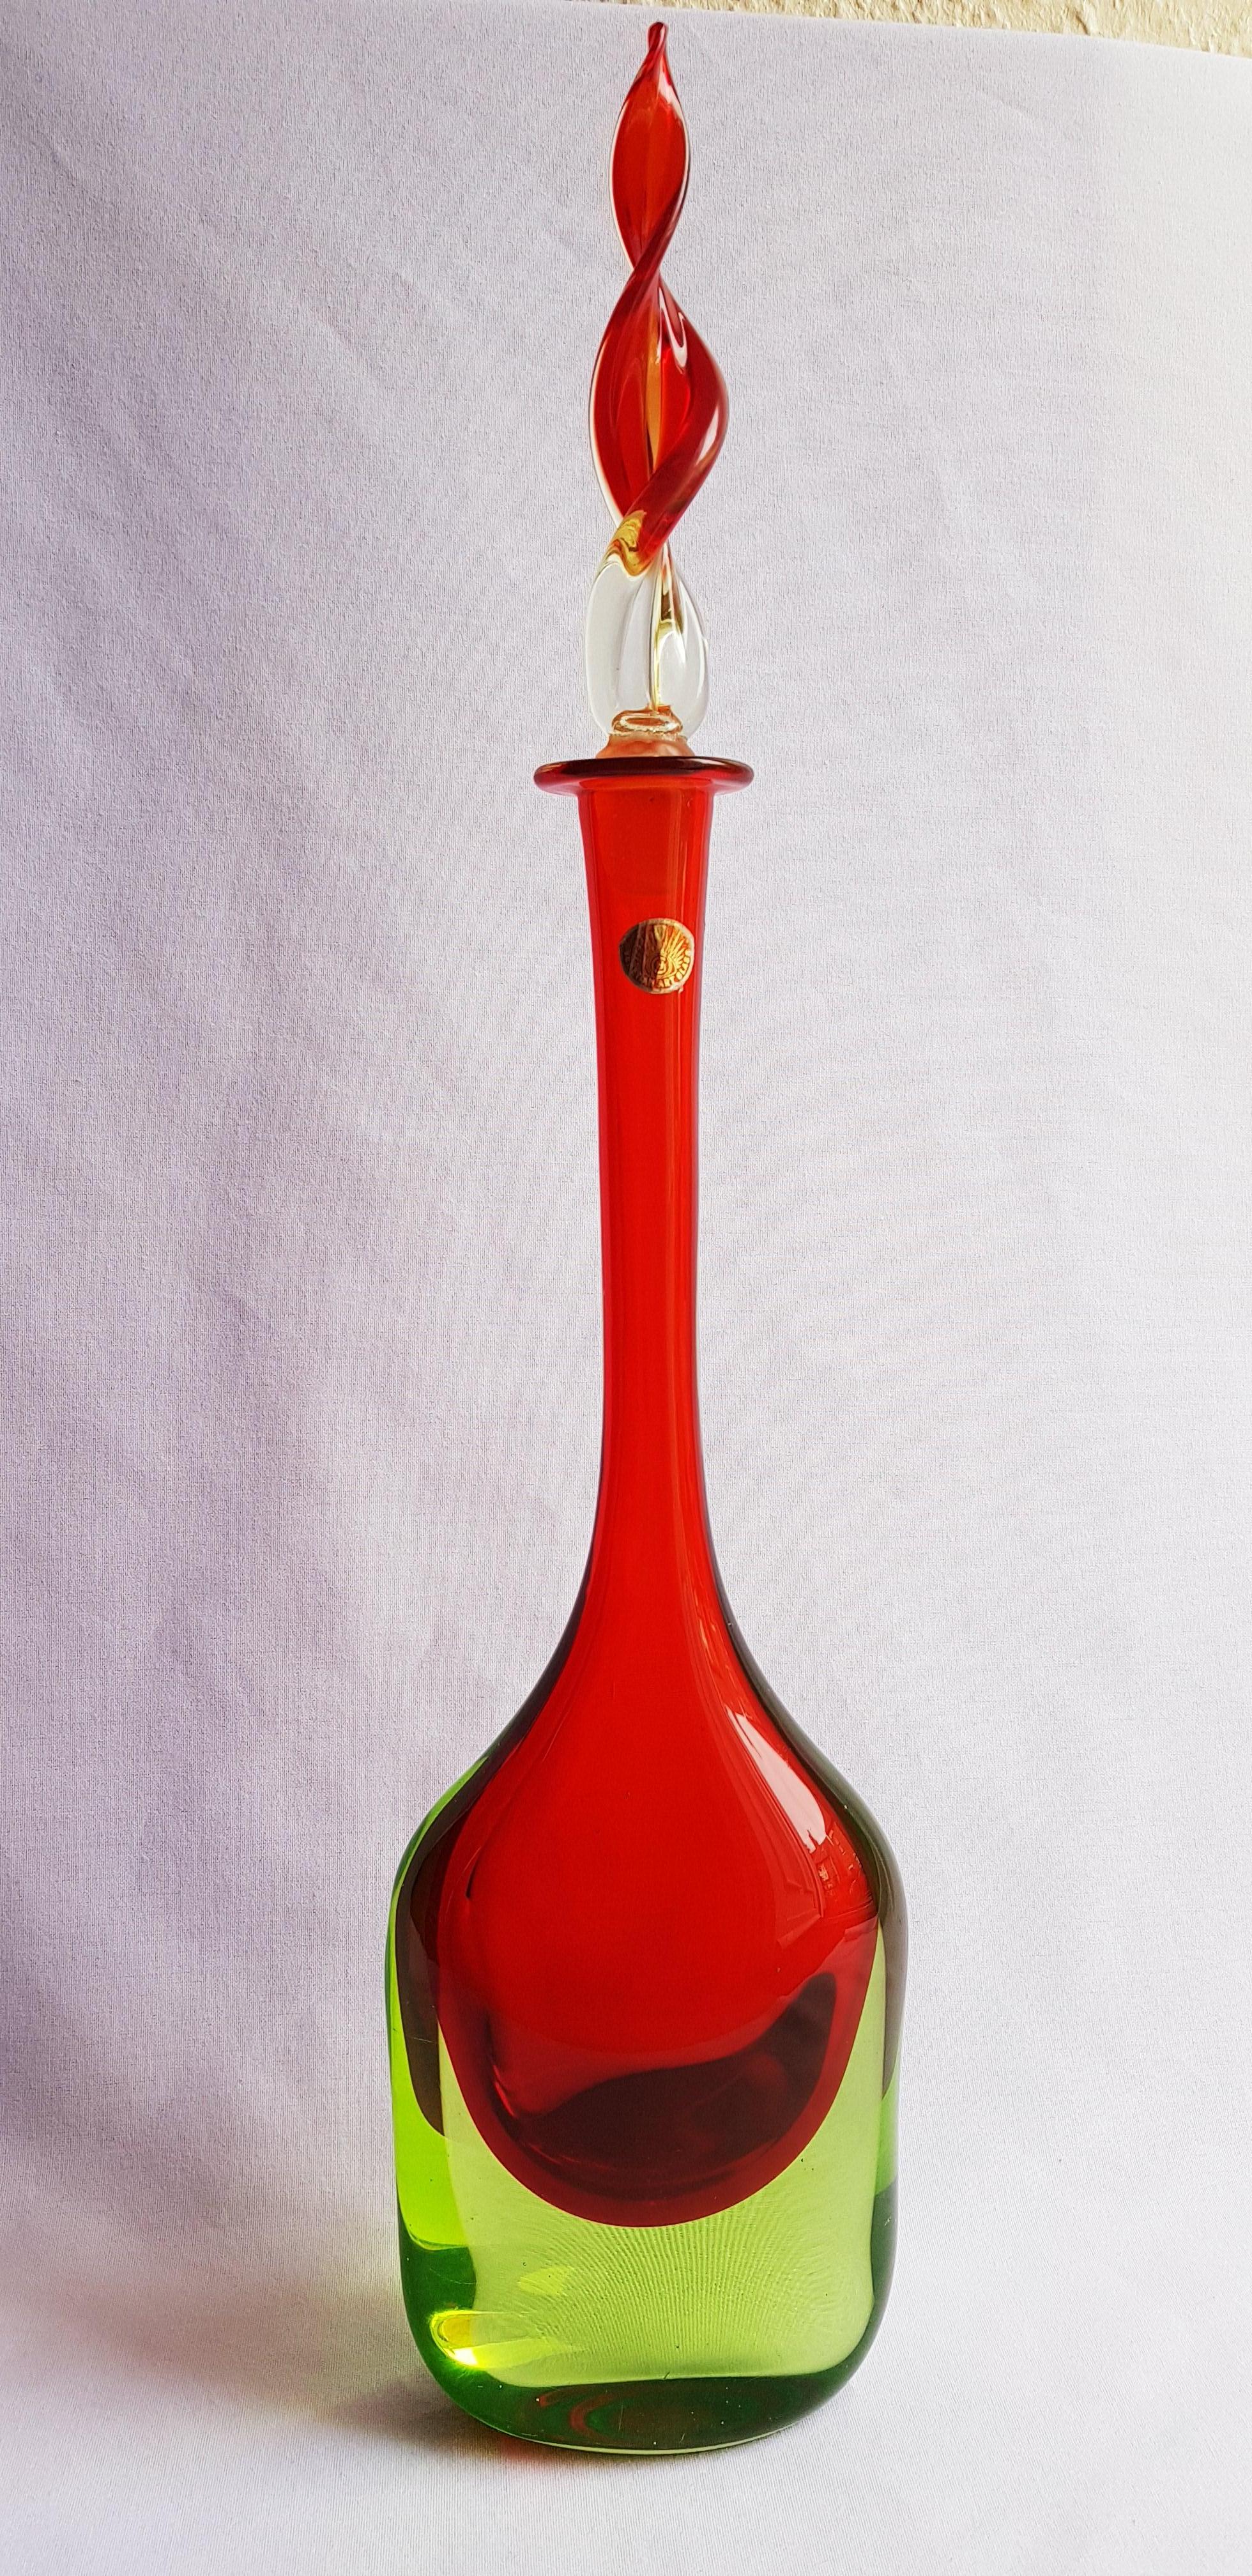 Antonio da Ros for Seguso vetri D'arte large uranium Bottle (50cm)  In Excellent Condition For Sale In Grantham, GB